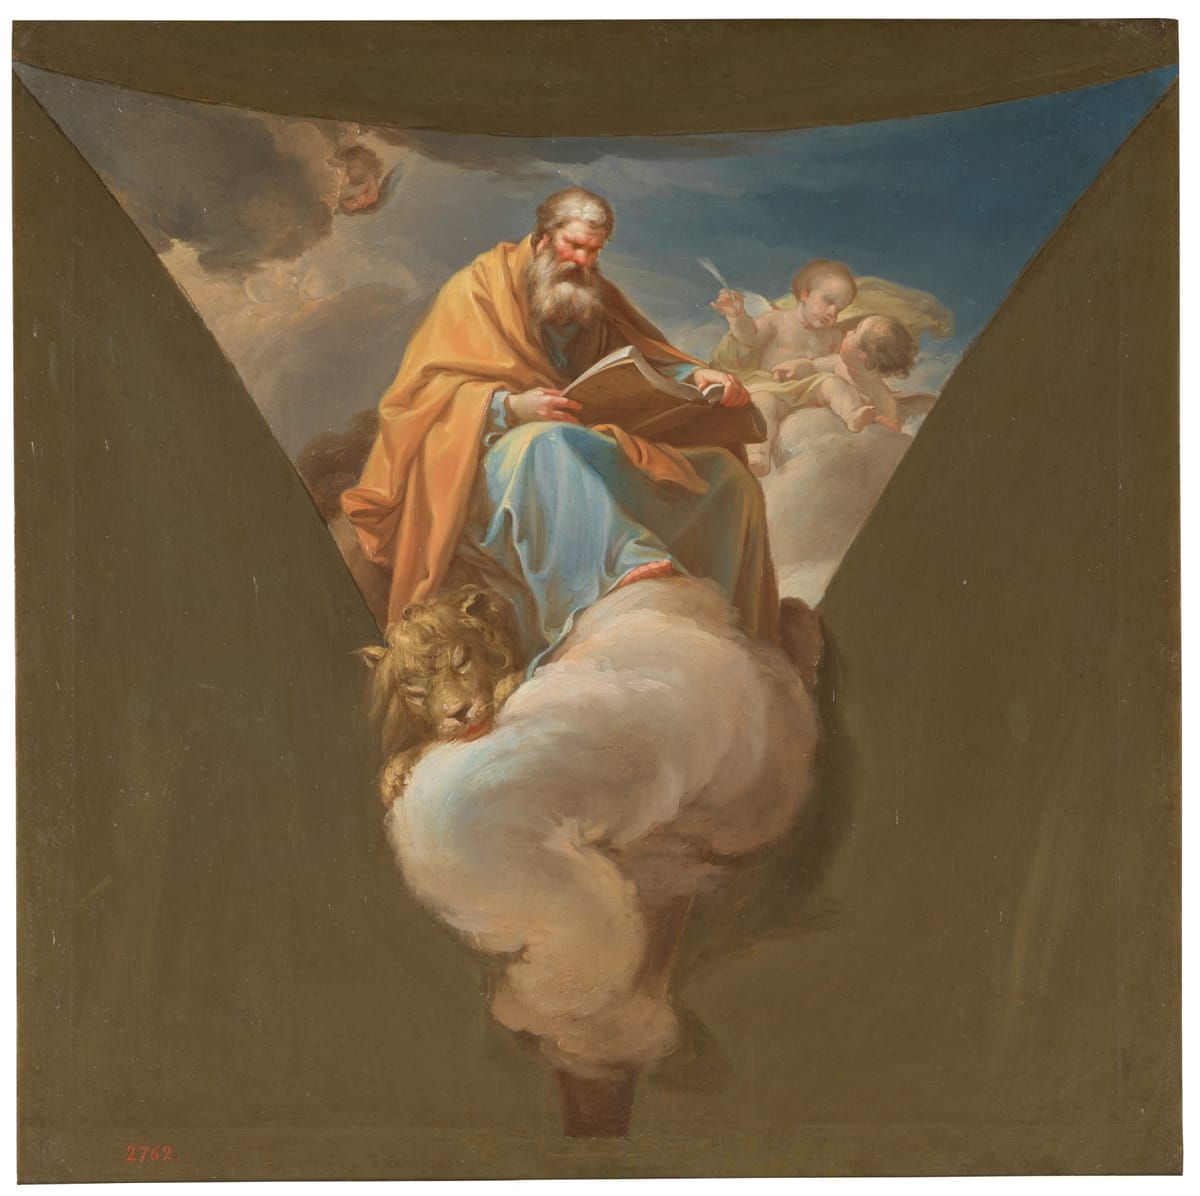 Saint Mark 1771 by Francisco Bayeu - Public Domain Catholic Painting